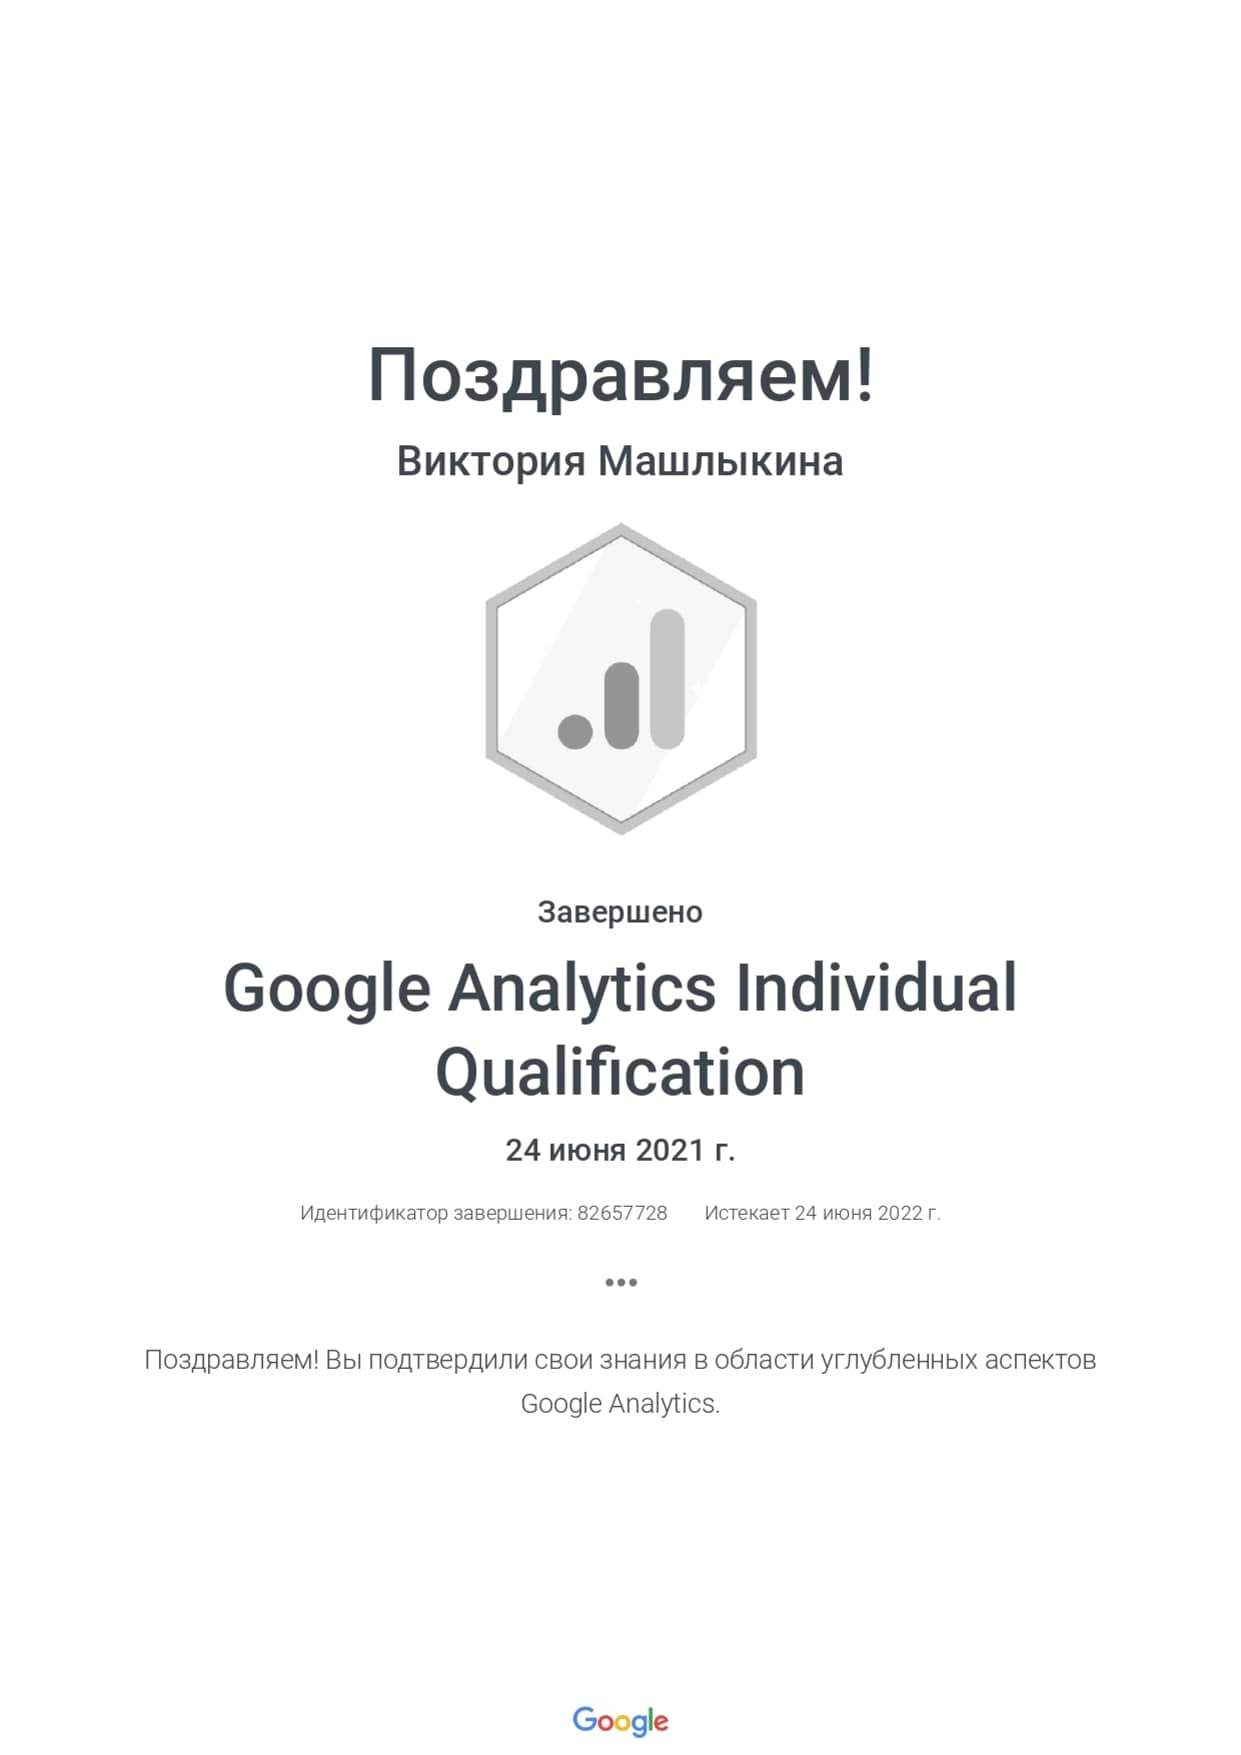 Виктория Машлыкина - сертификат